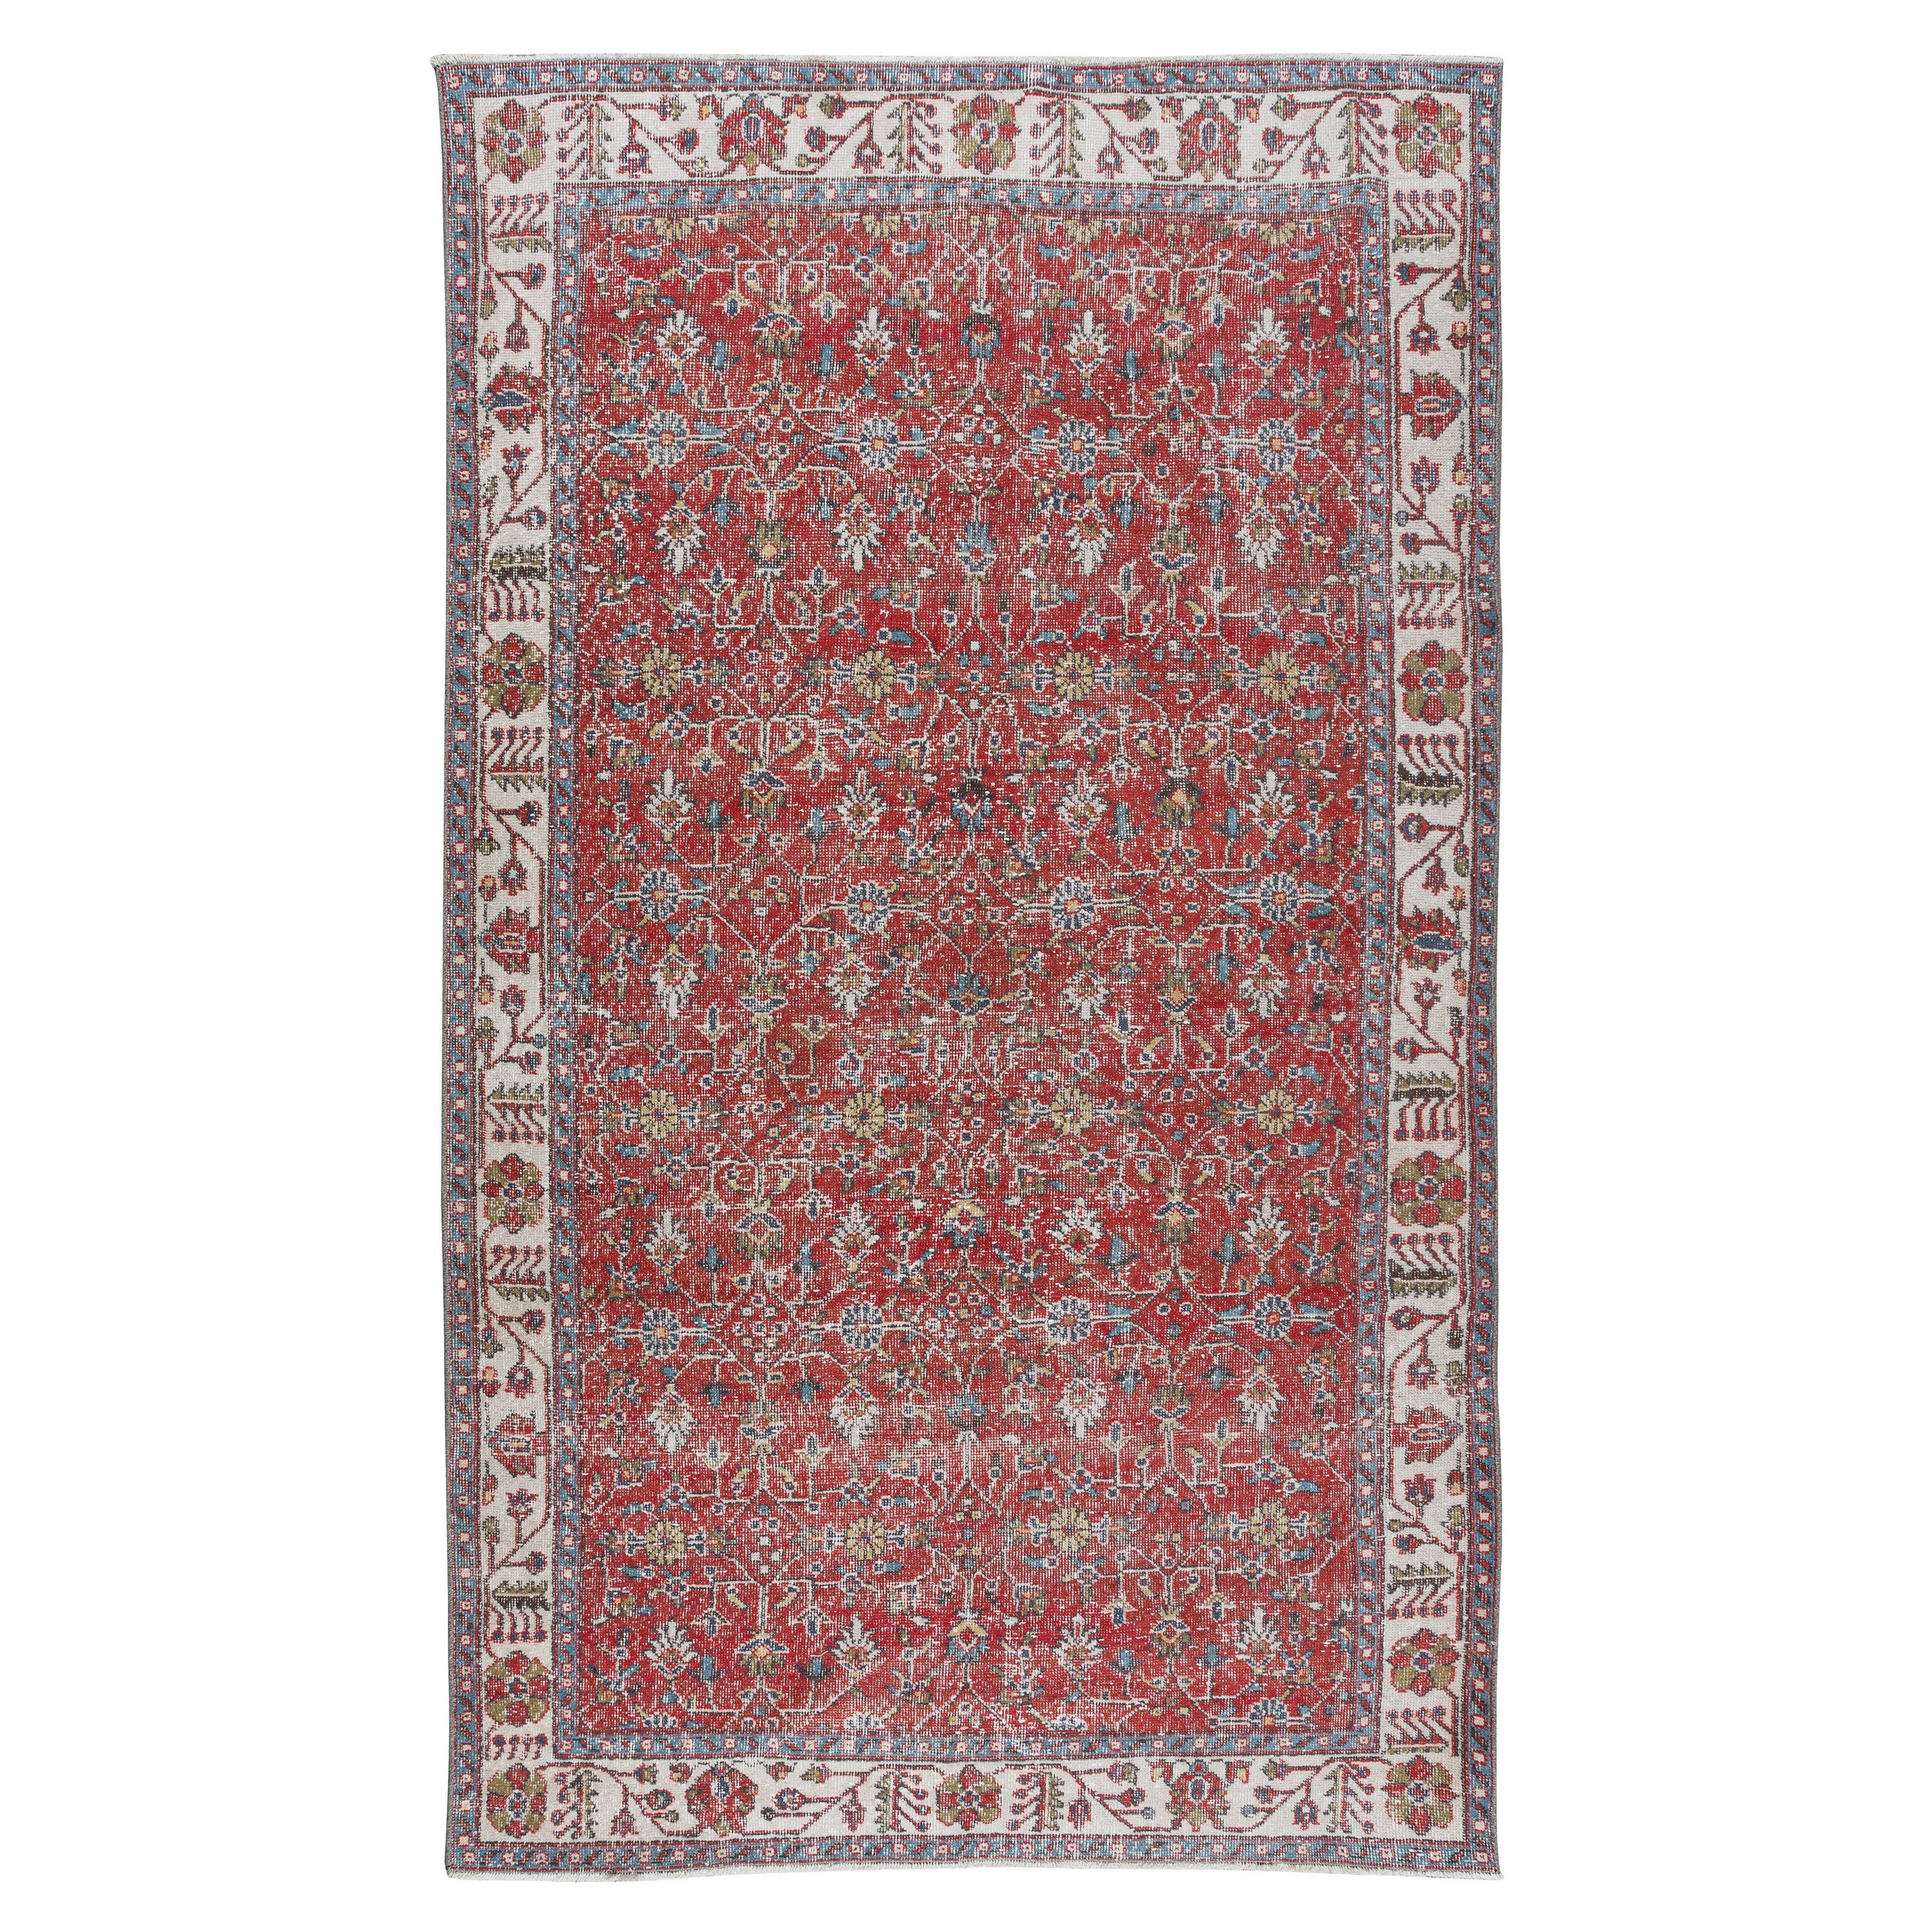 5.7x9.7 Ft Vintage Floral Handgeknüpfter Teppich aus anatolischer Wolle in Rot & Beige mit Blumenmuster